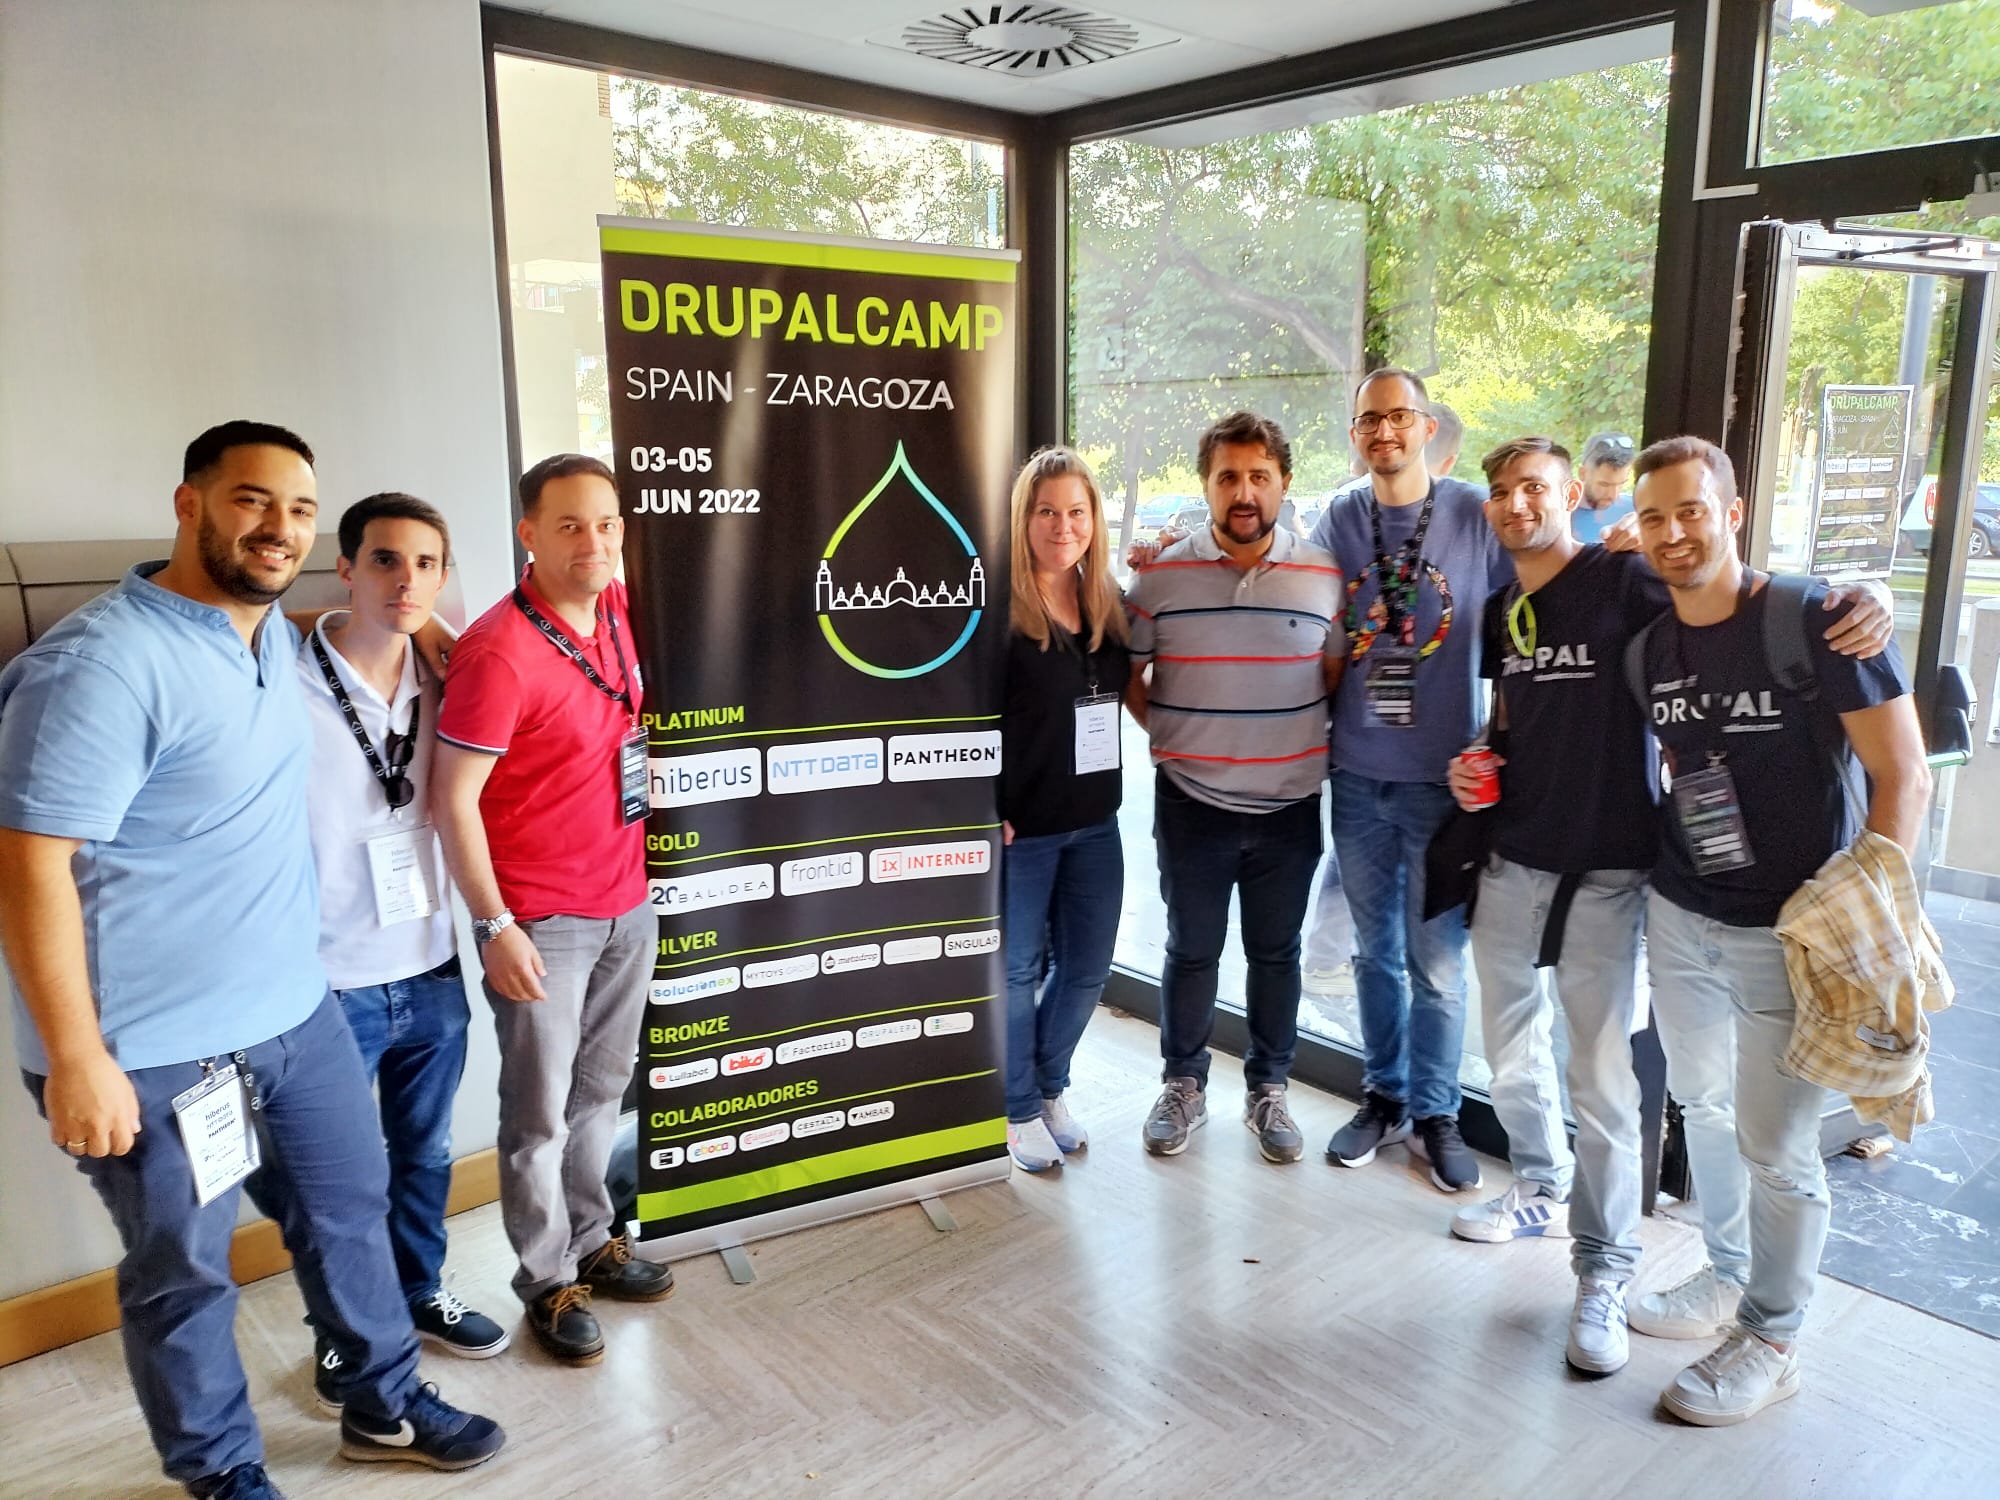 DrupalCamp Spain 2022